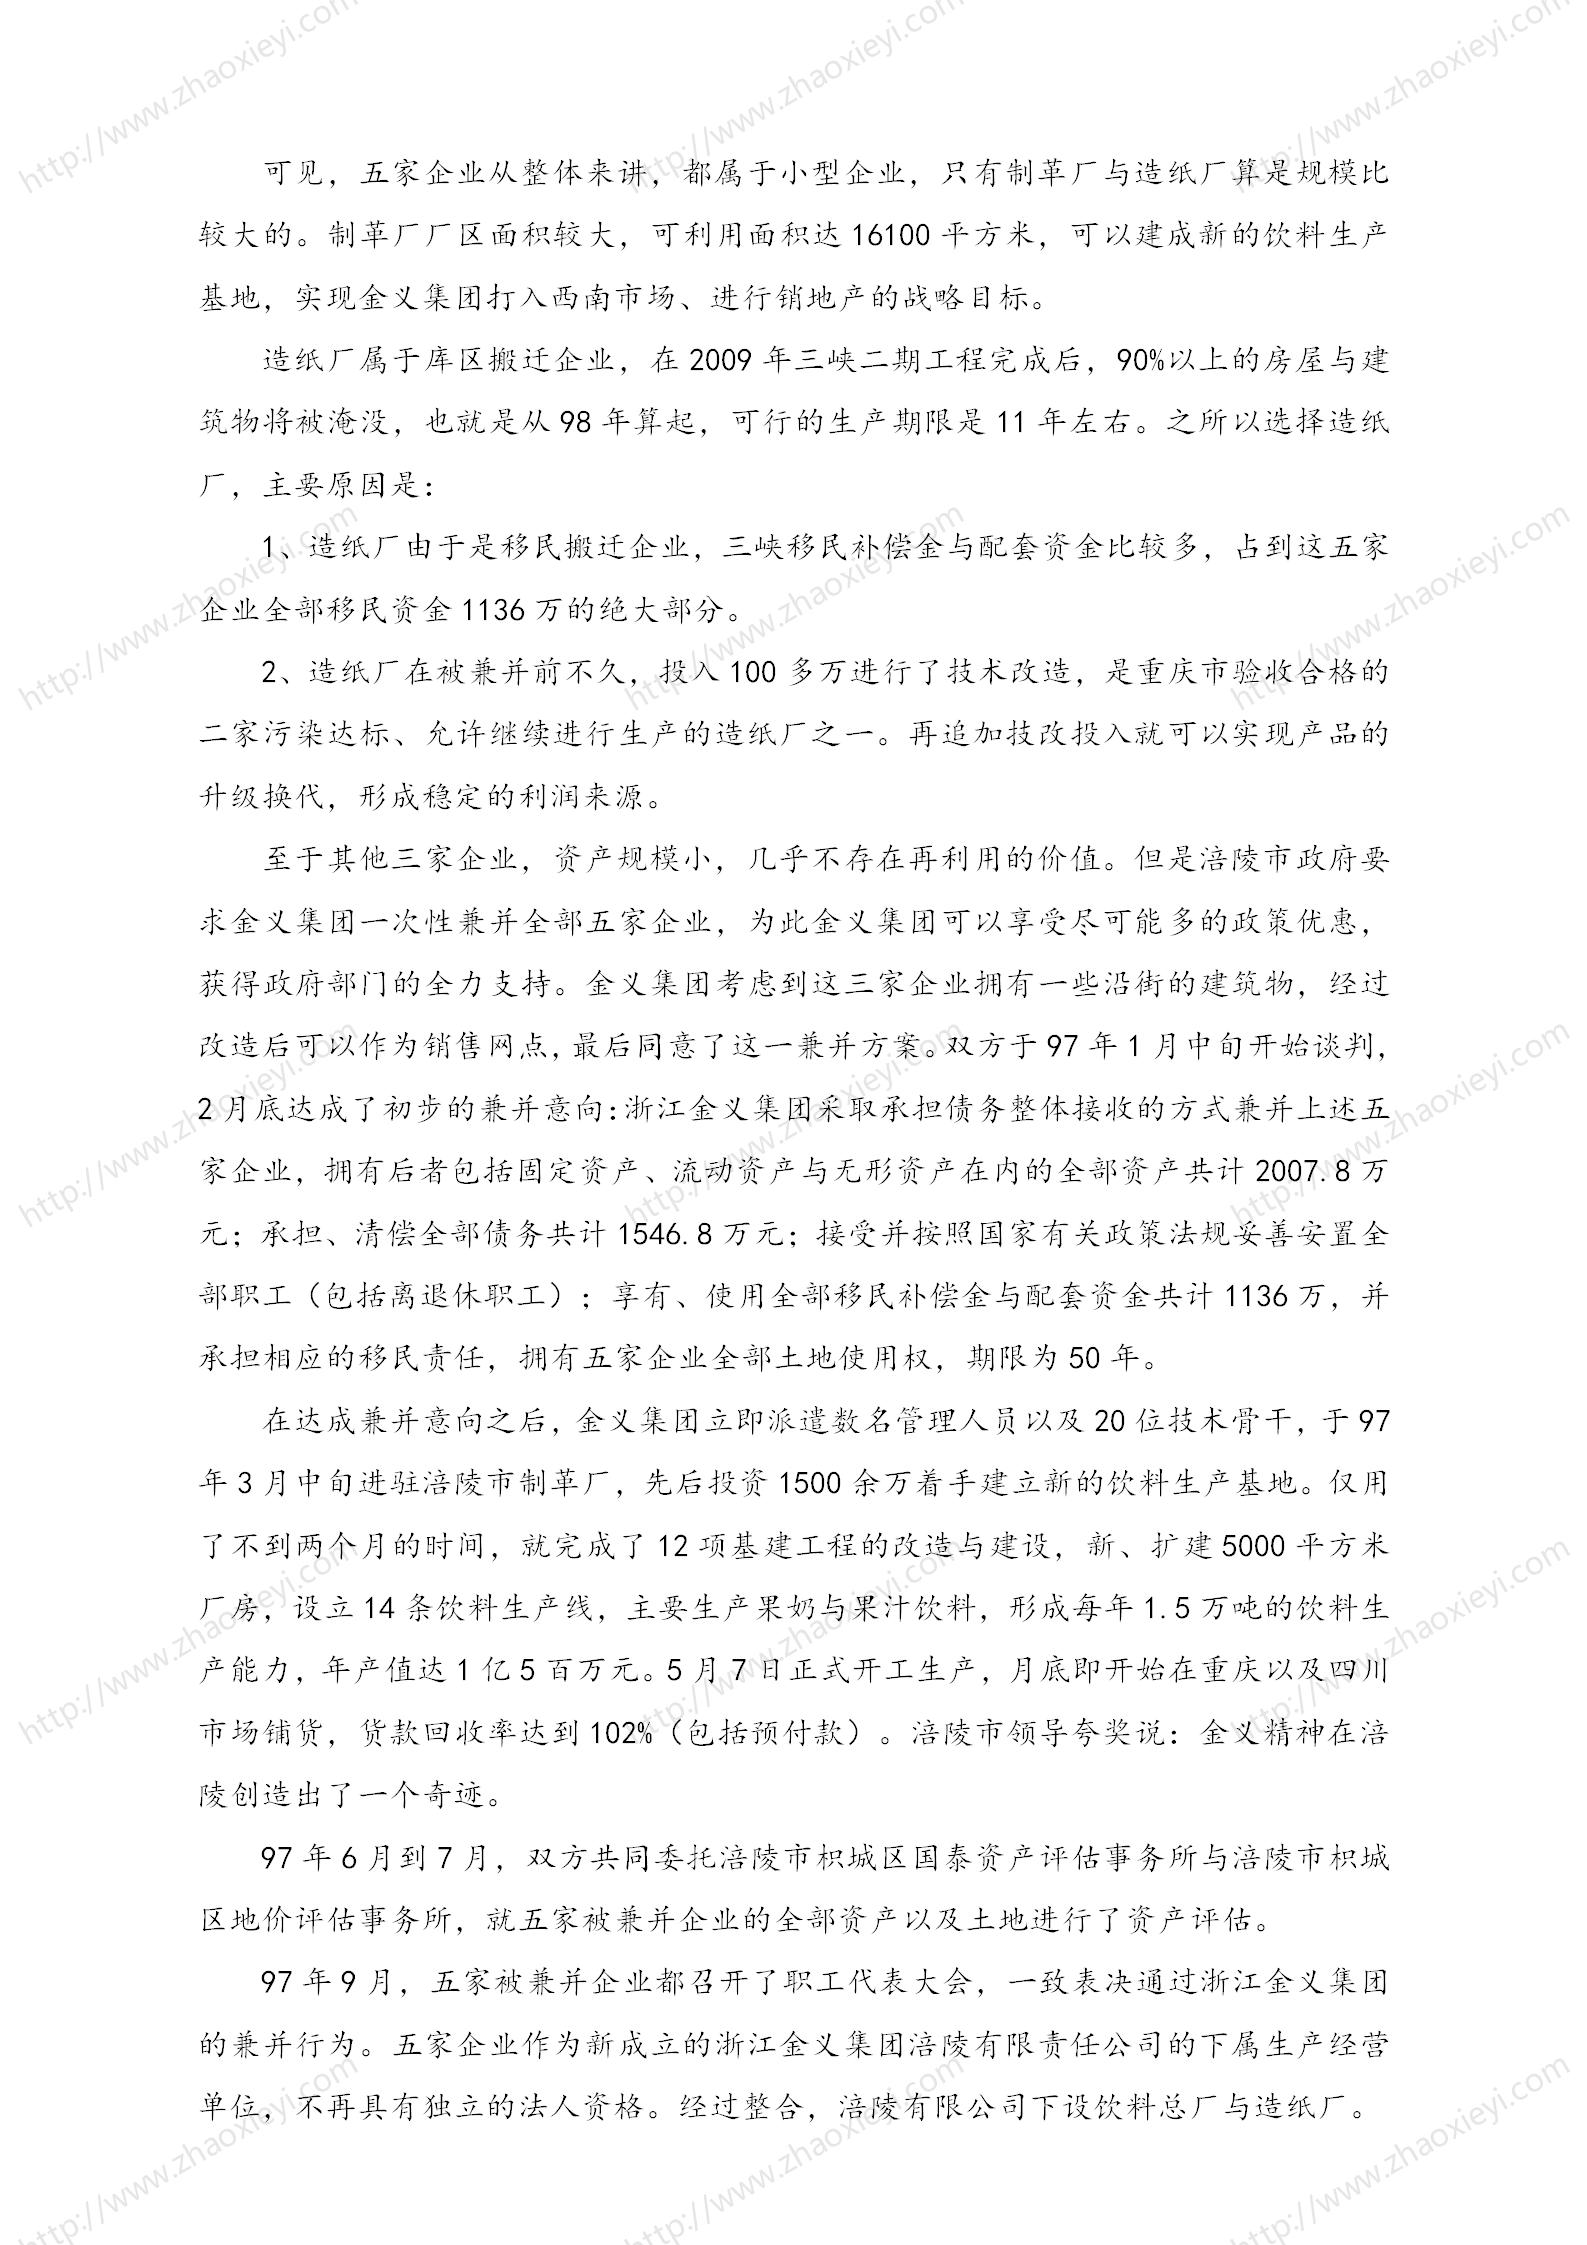 中国企业并购经典案例_126.jpg